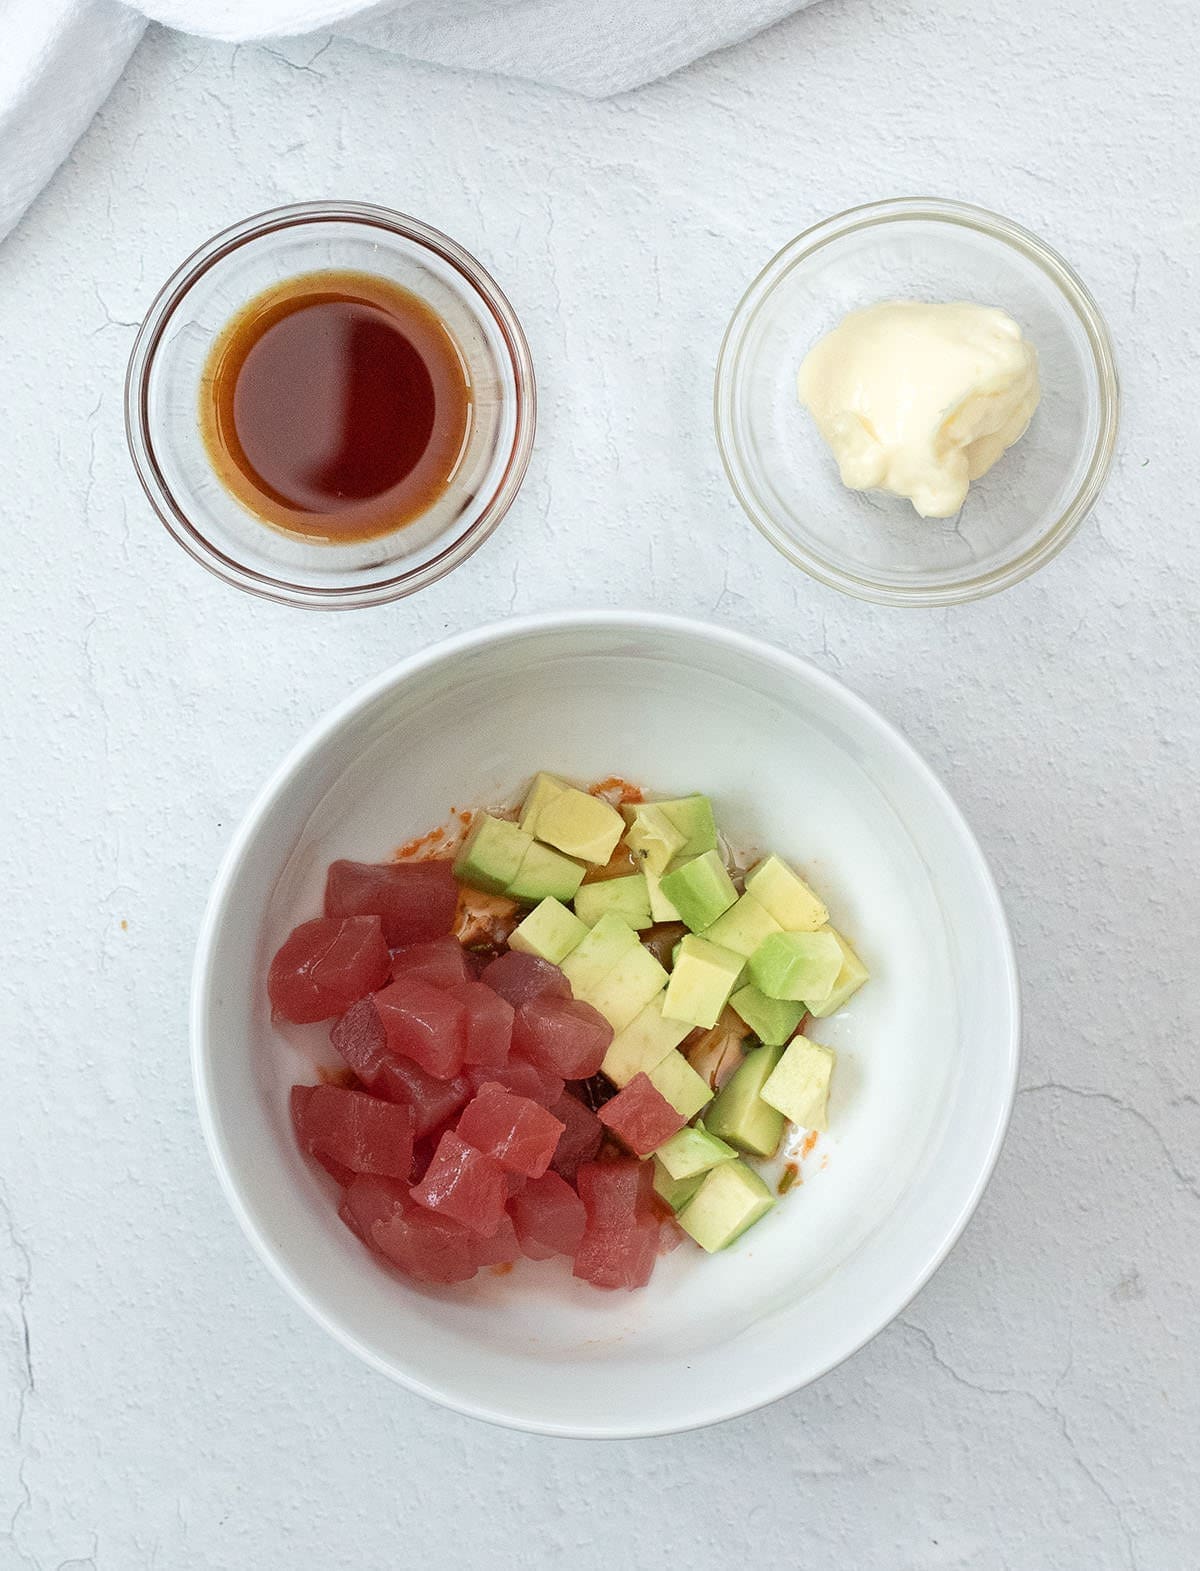 Tuna and avocado in a white bowl.